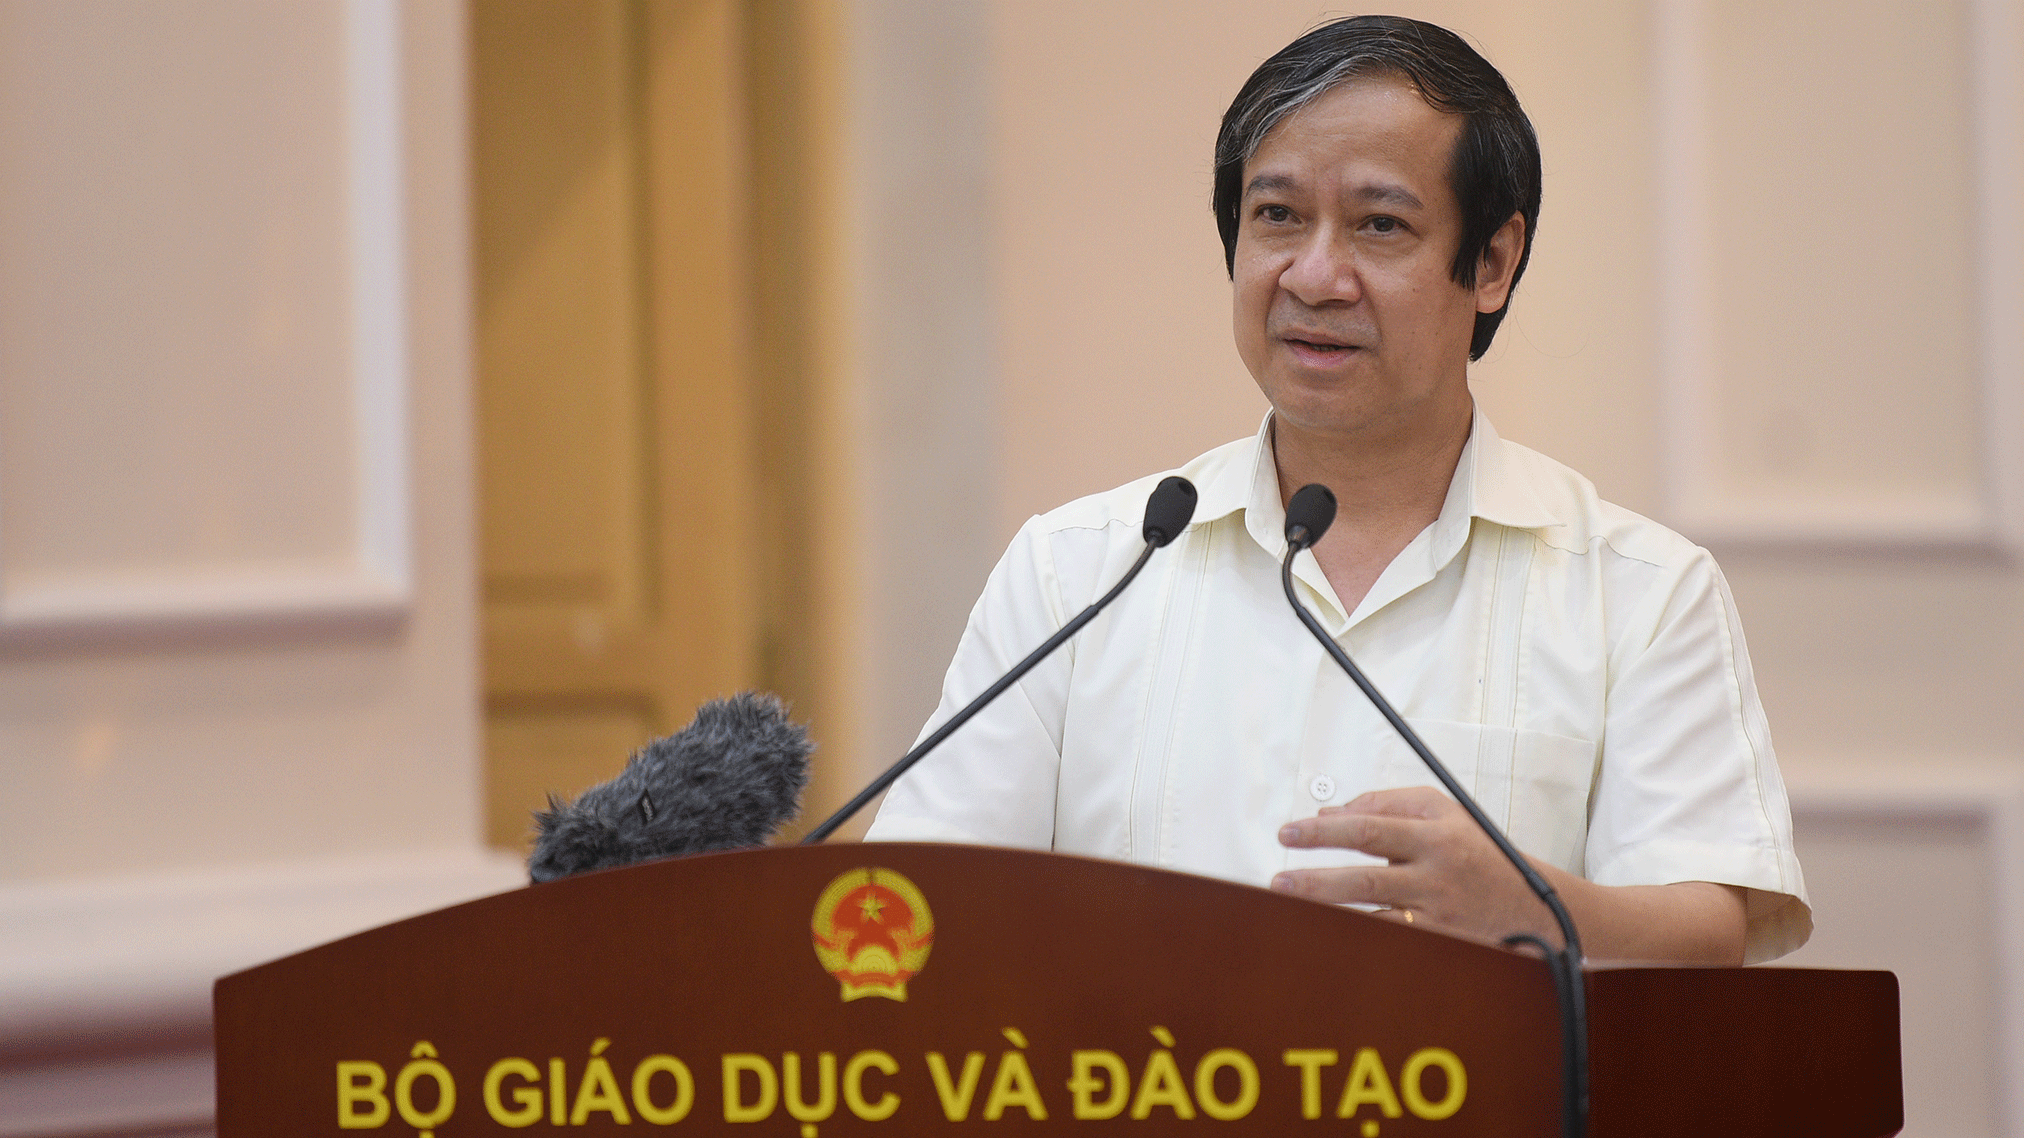 Tâm thư Bộ trưởng GD&ĐT Nguyễn Kim Sơn gửi giáo viên